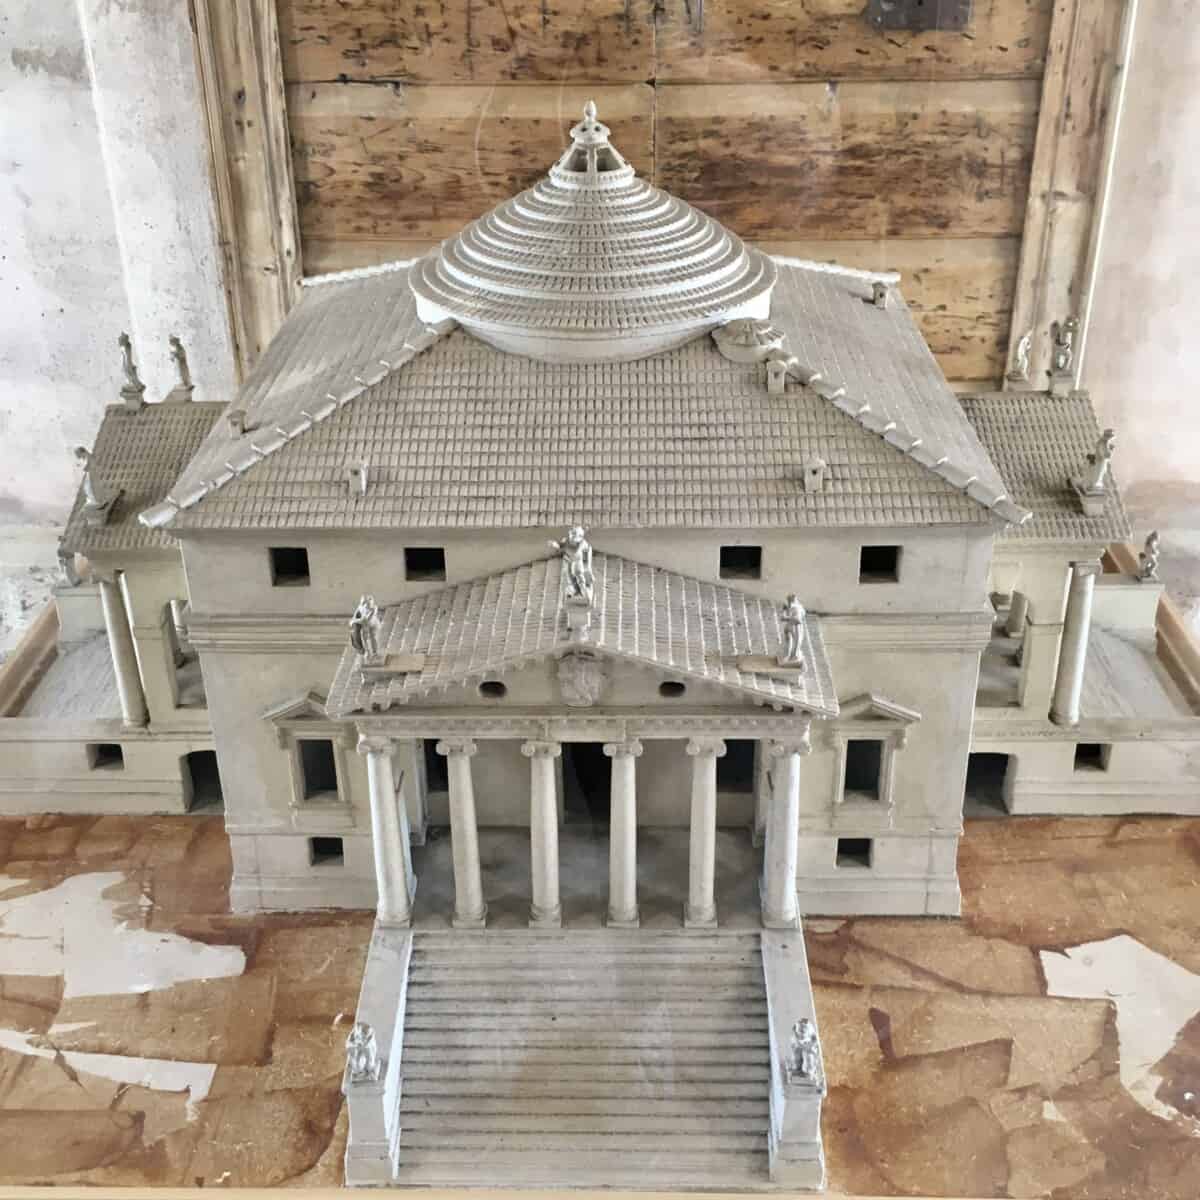 a 3D model of Andrea Palladio's Villa La Rotonda on the premises in a glass case